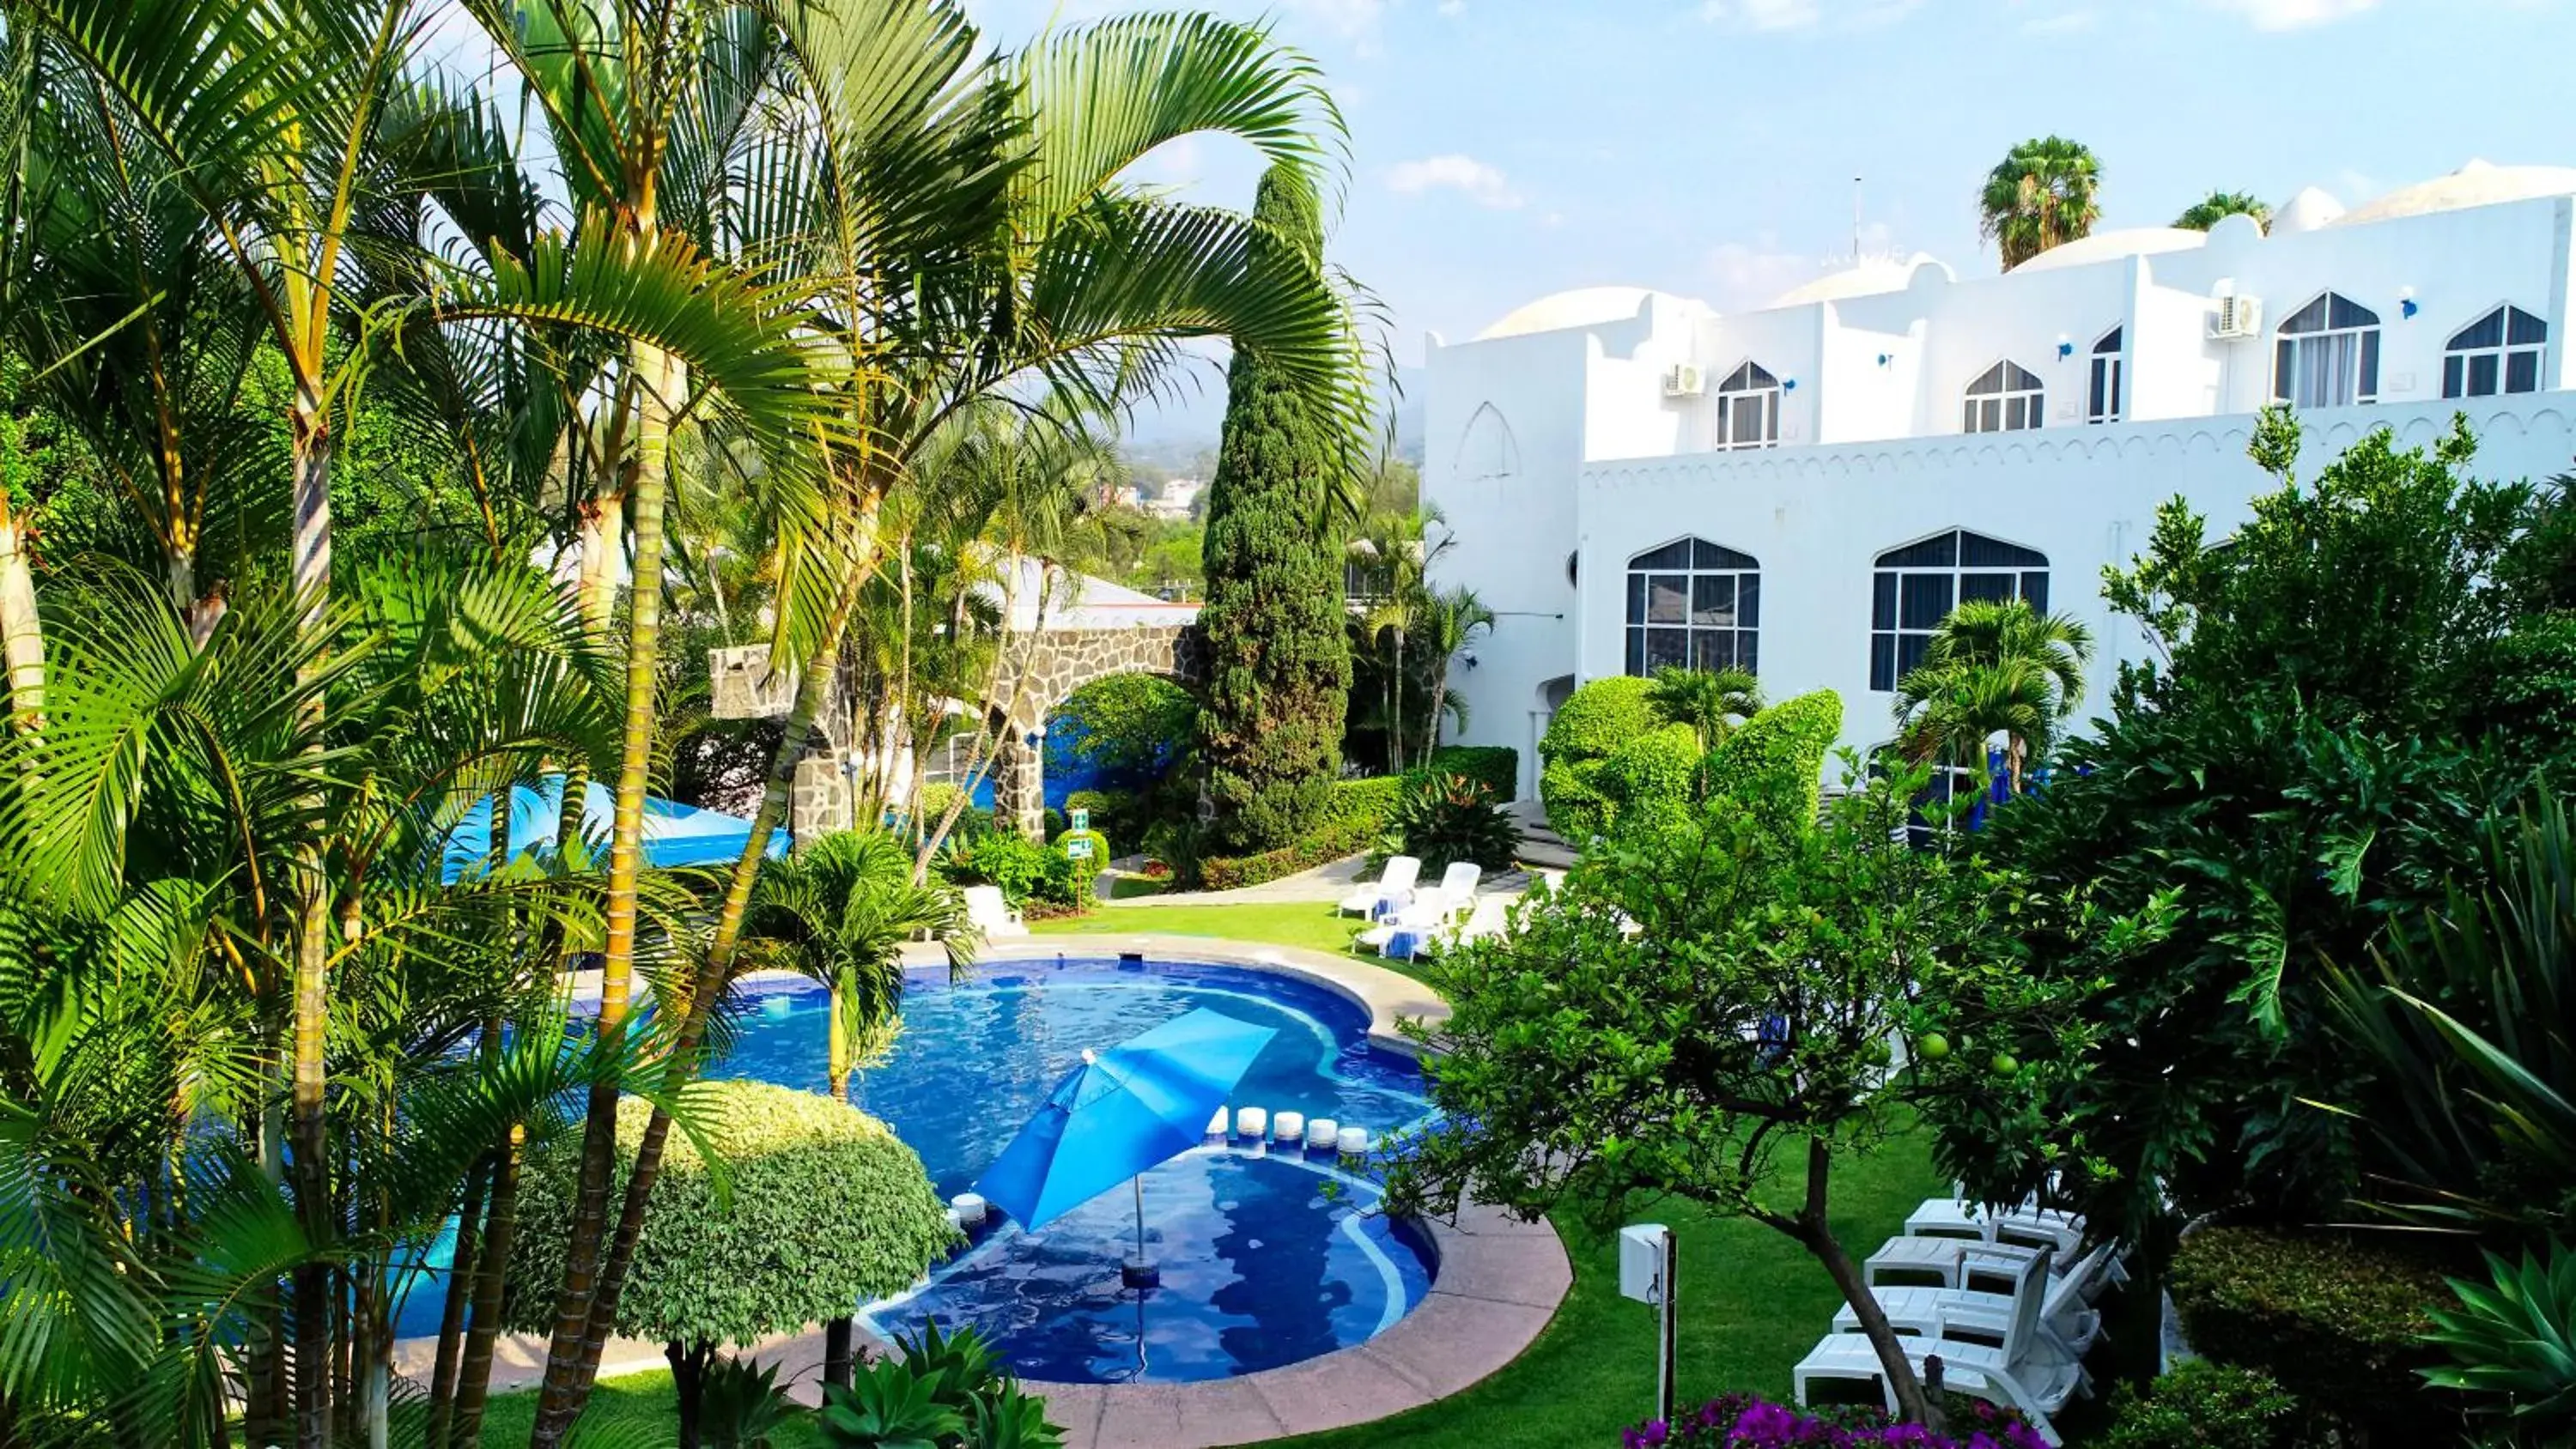 Property building, Pool View in Villa Bejar Cuernavaca